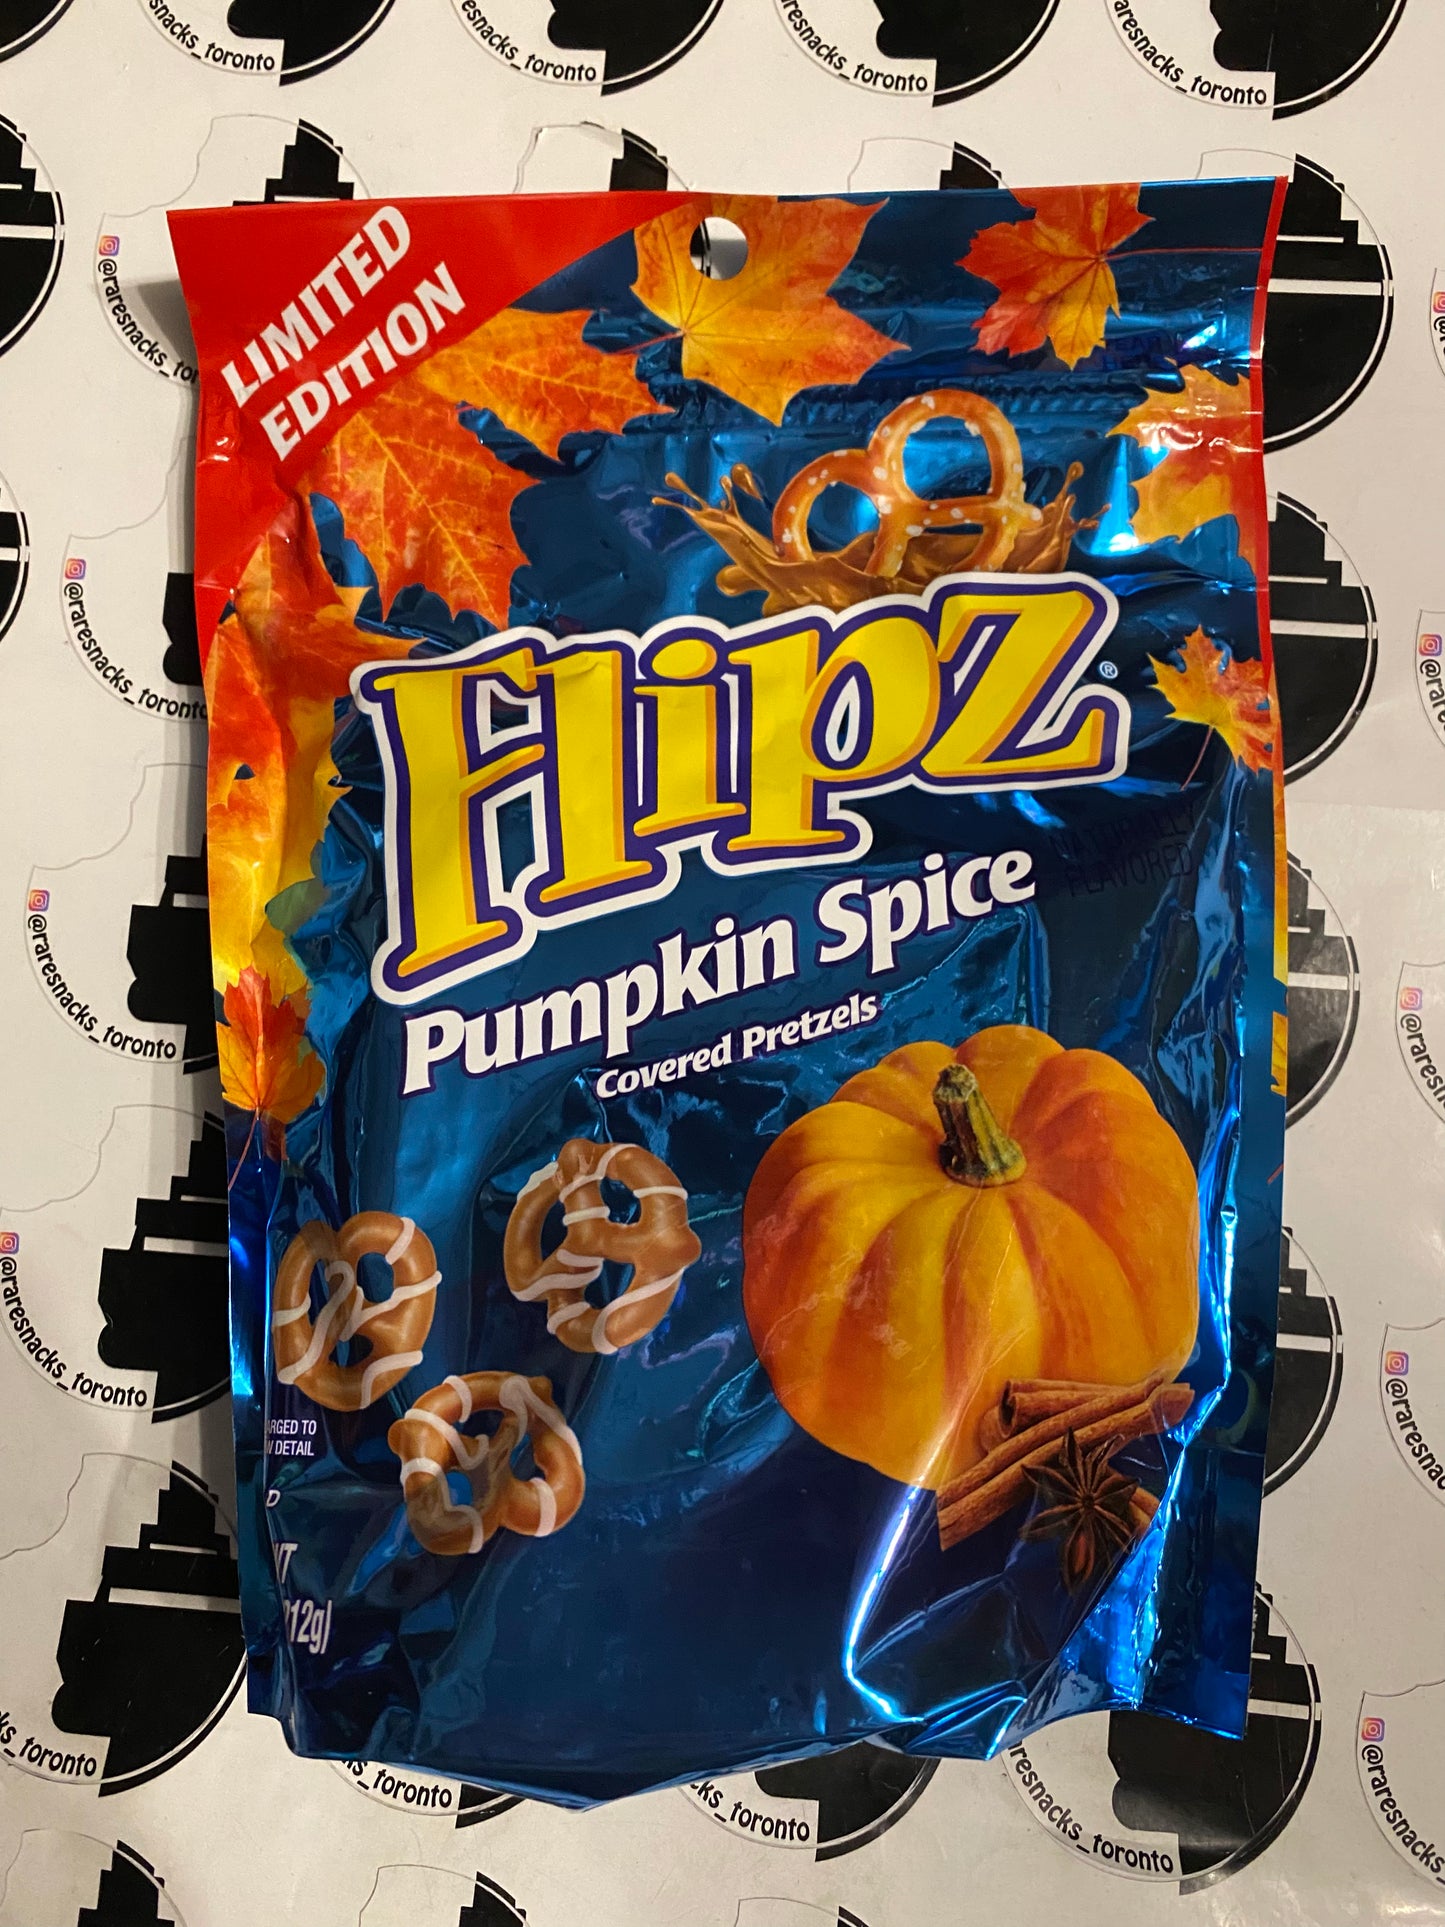 Flipz Pumpkin Spice Limited Edition